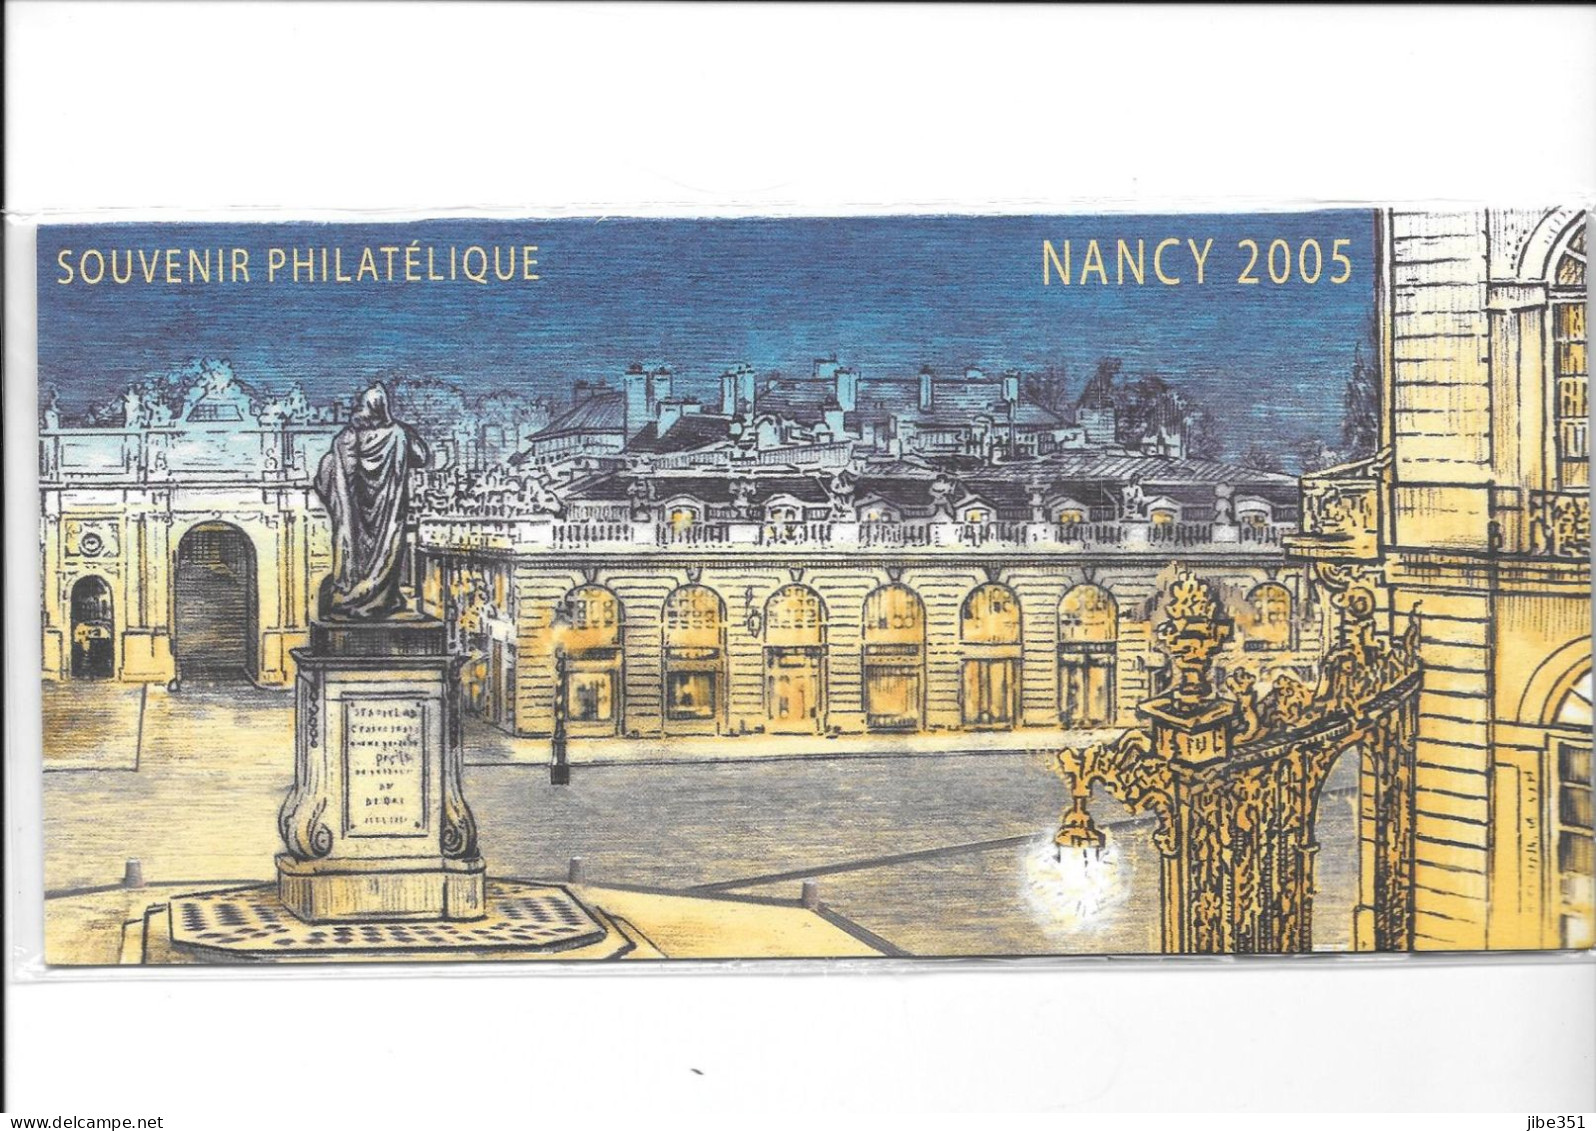 Souvenir Philatélique Nancy 2005 Neuf Sous Blister - Souvenir Blocks